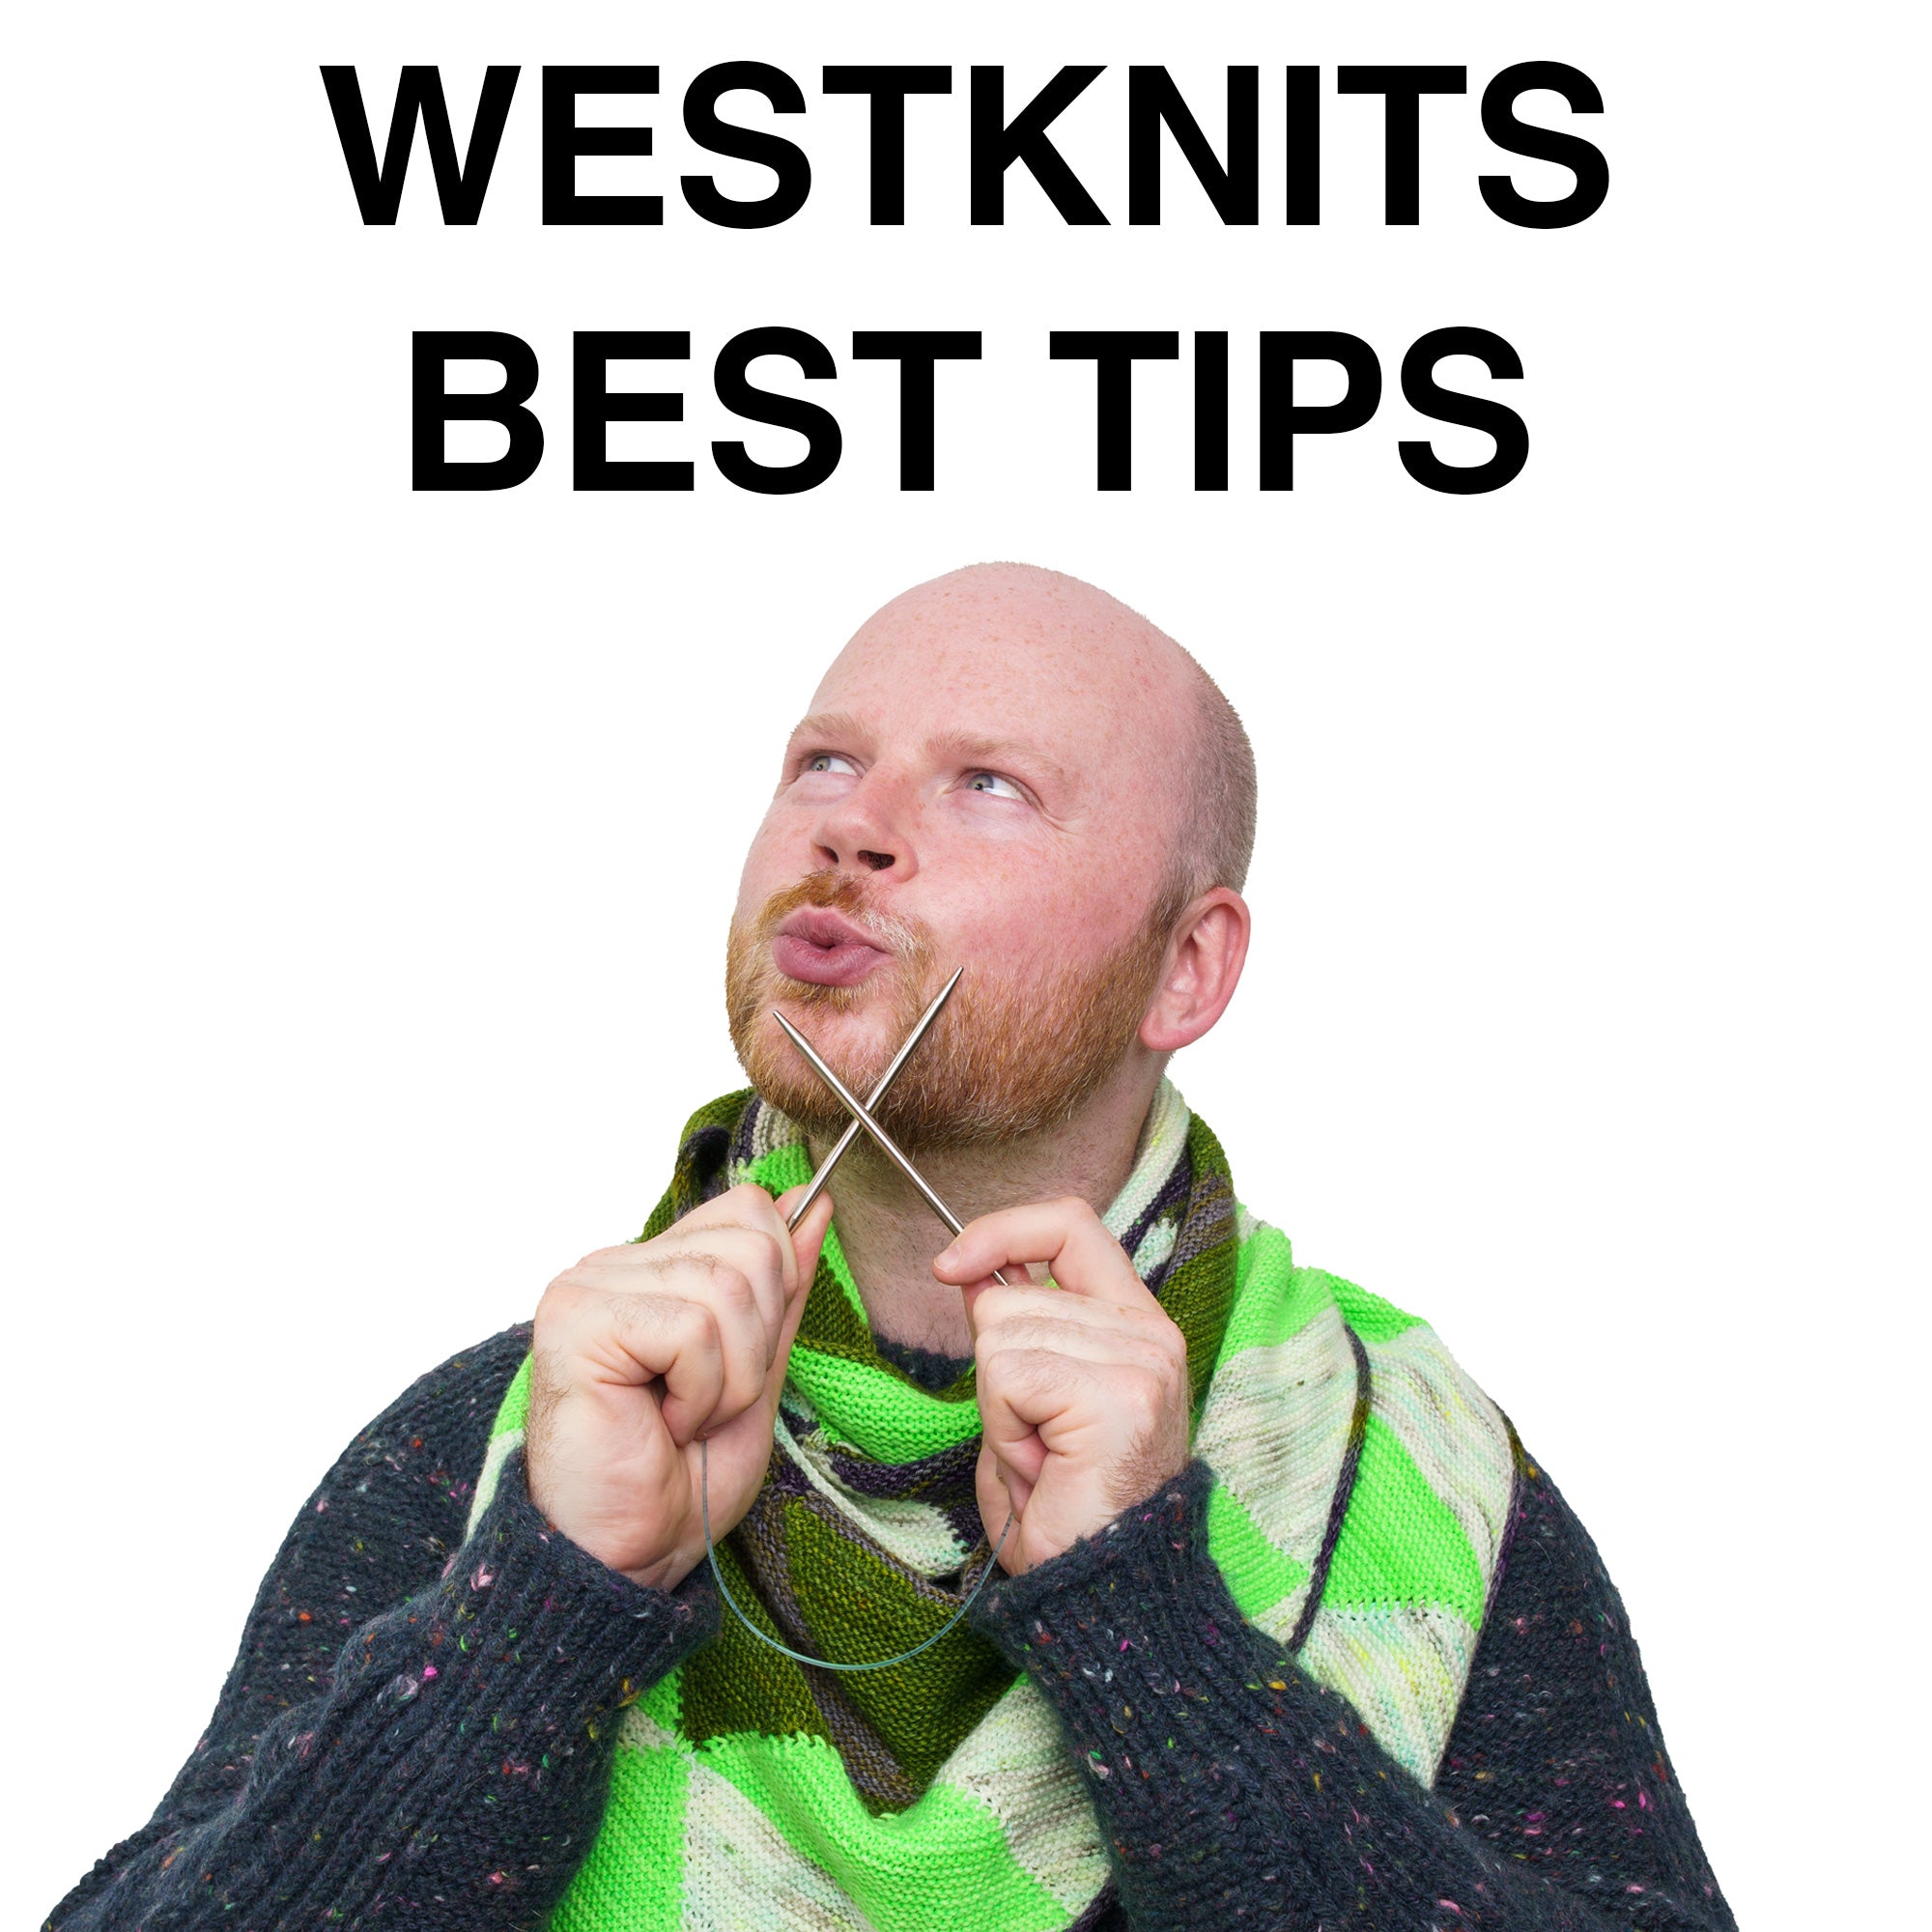 Westknits Best Tips